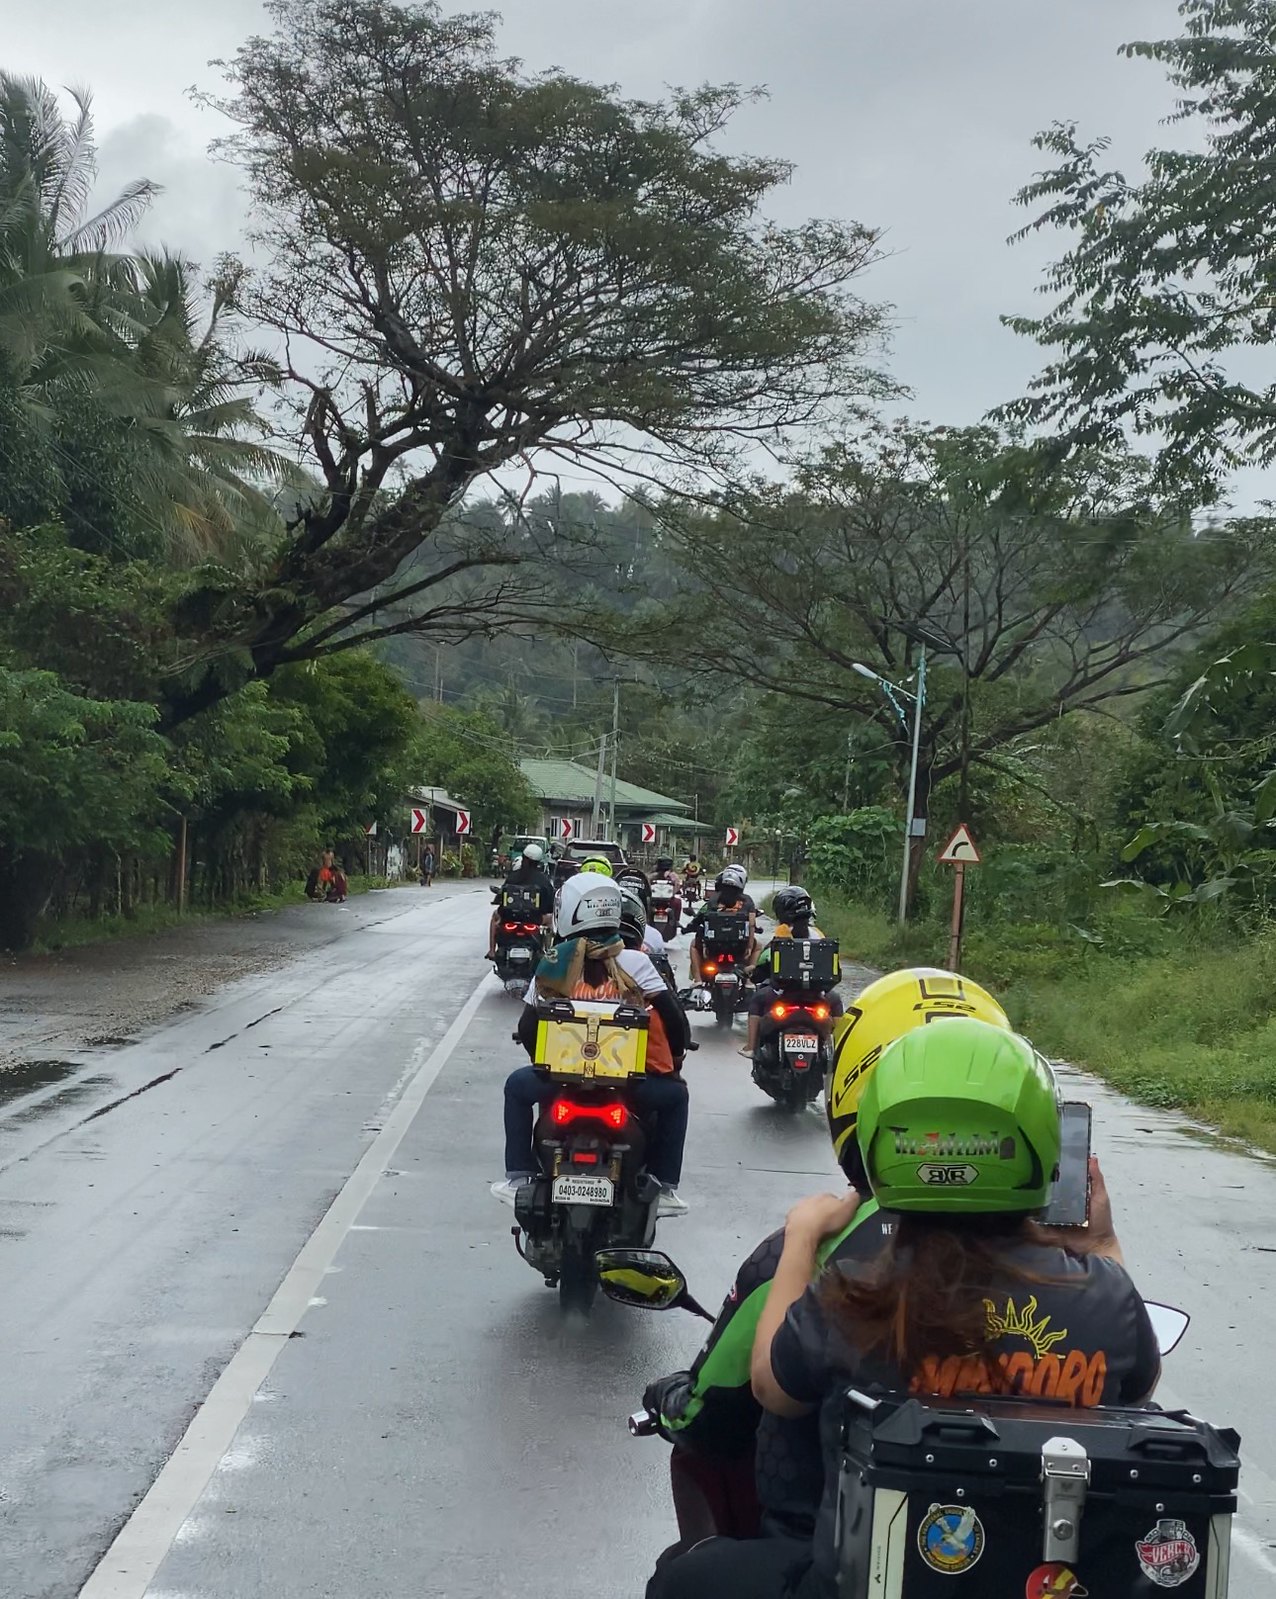 Mindoro Motorcycle Loop Experience